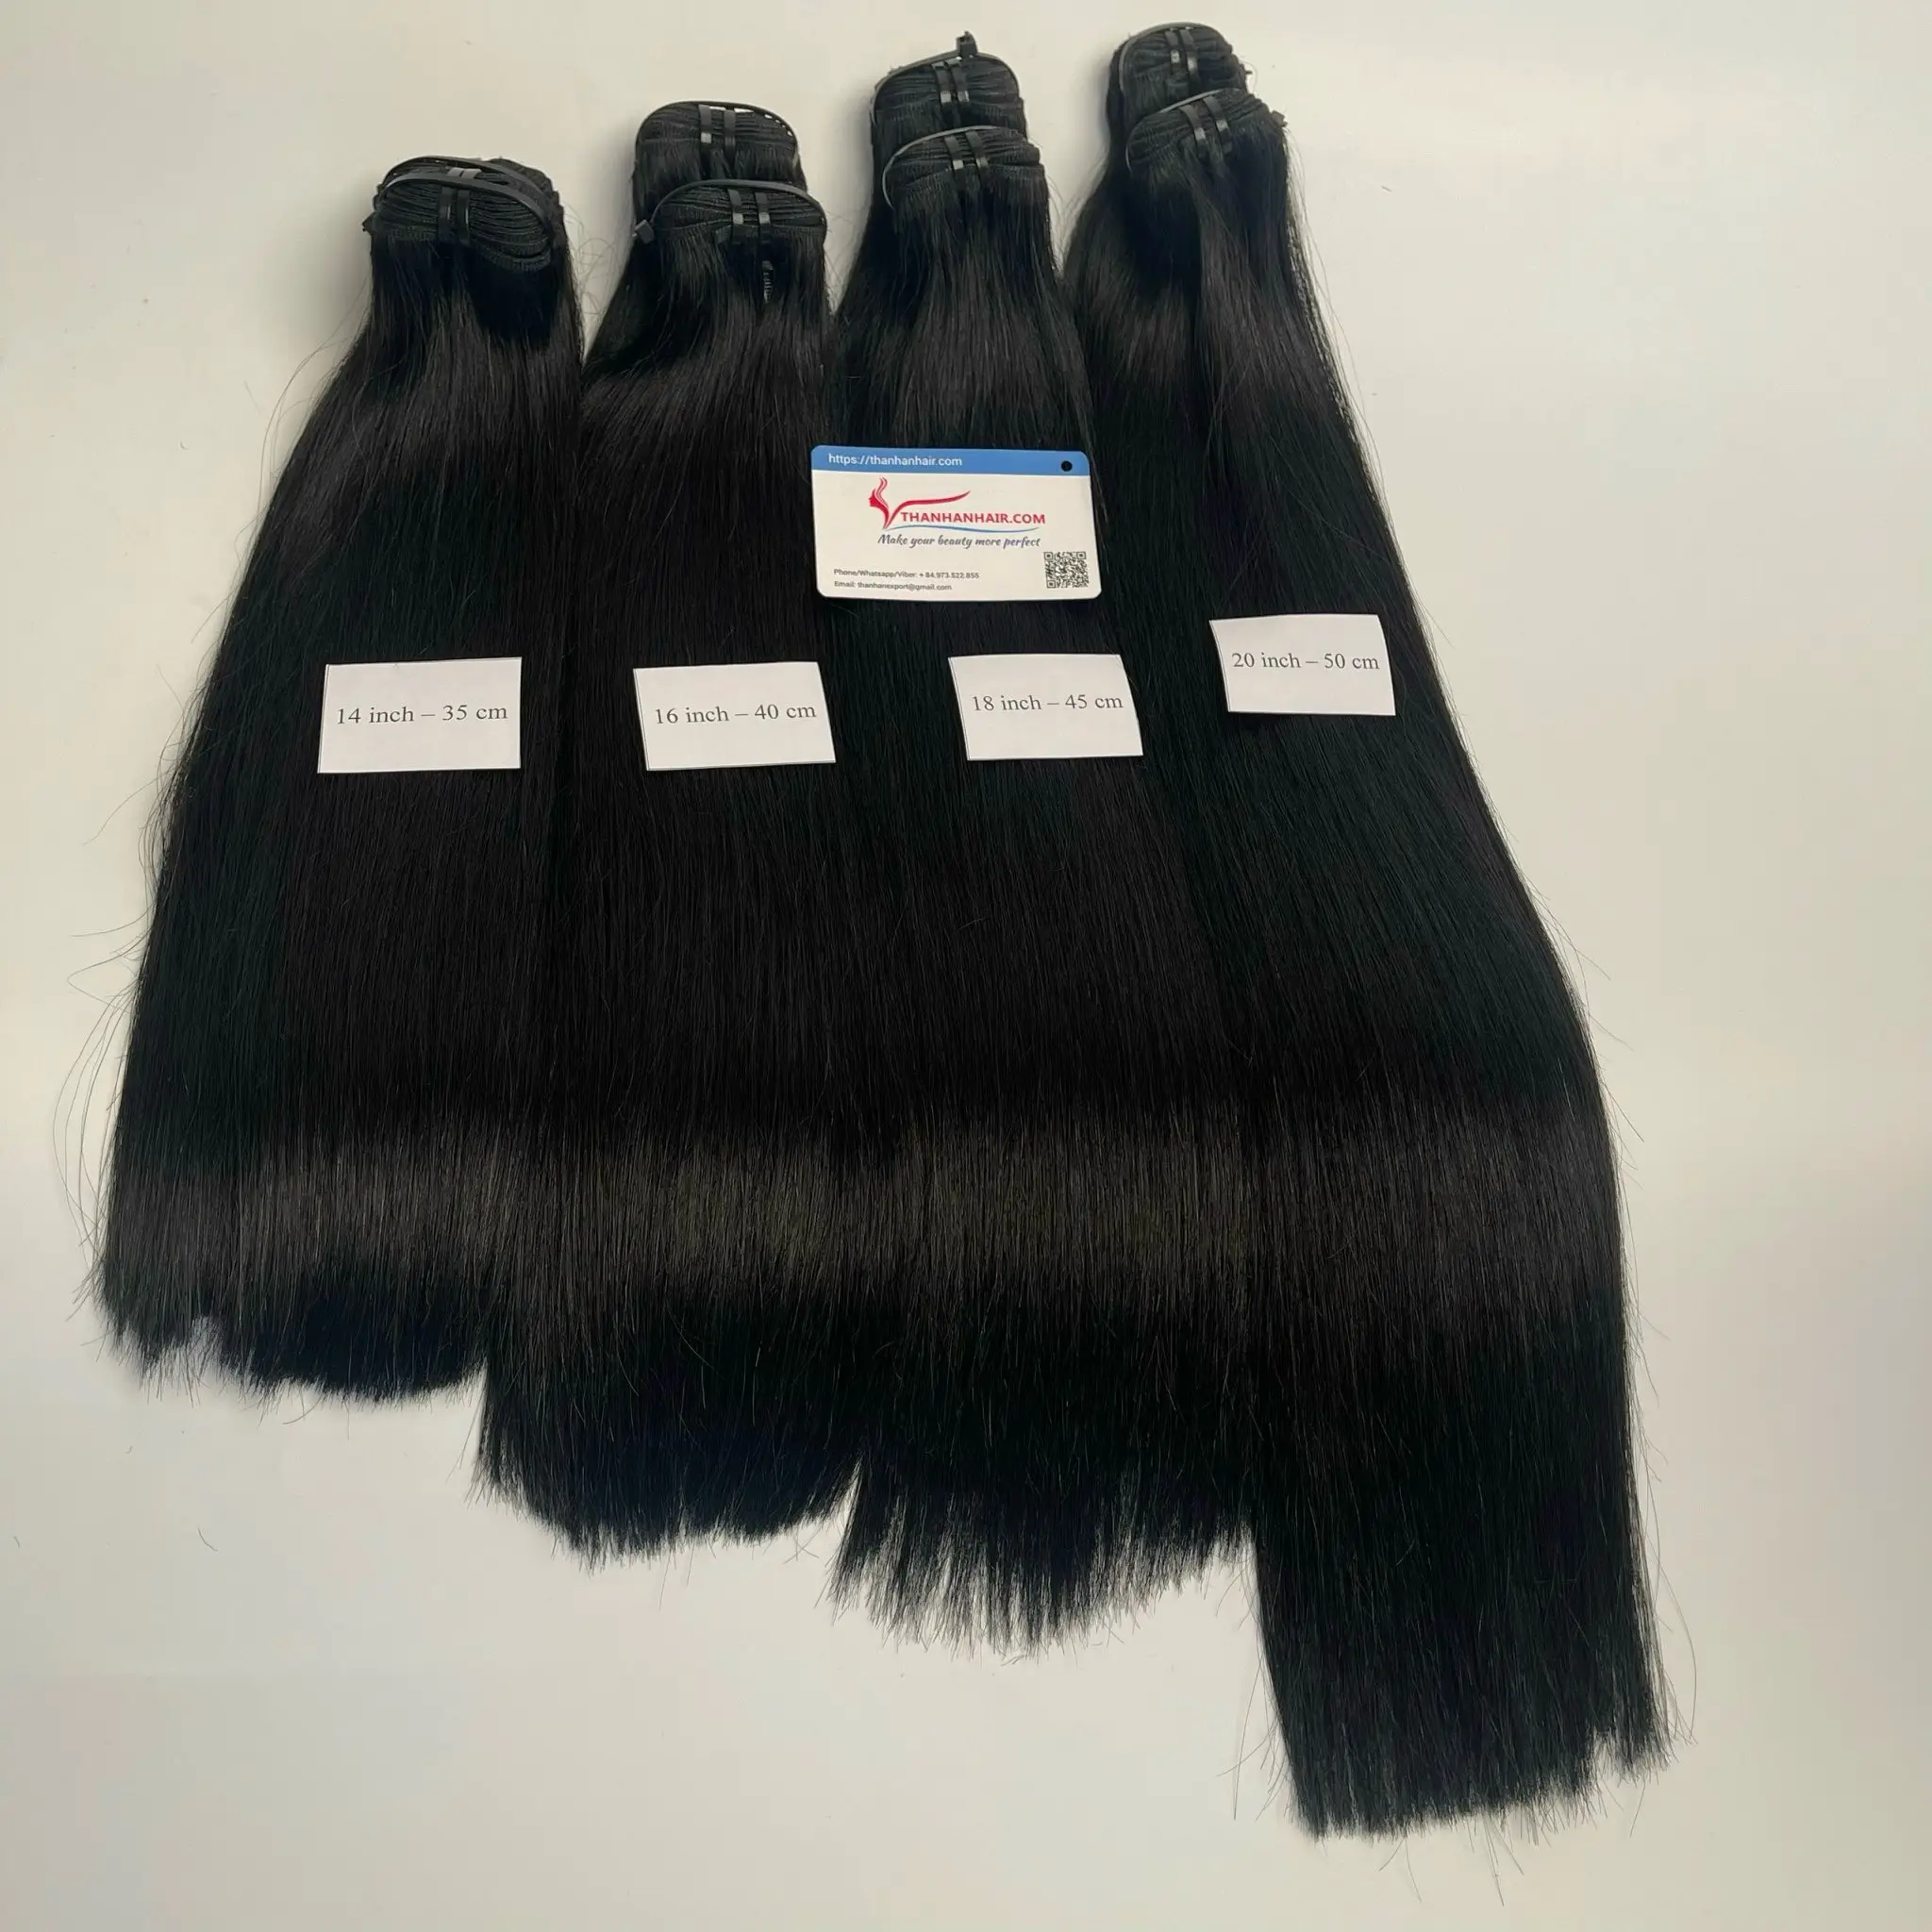 Natürliche gewellte U-Spitze Keratin-Spitze vietnamesische Haarverlängerungen seidengem, geradem Wellen-Stil im Großhandel gepreisgutes menschliches Haar